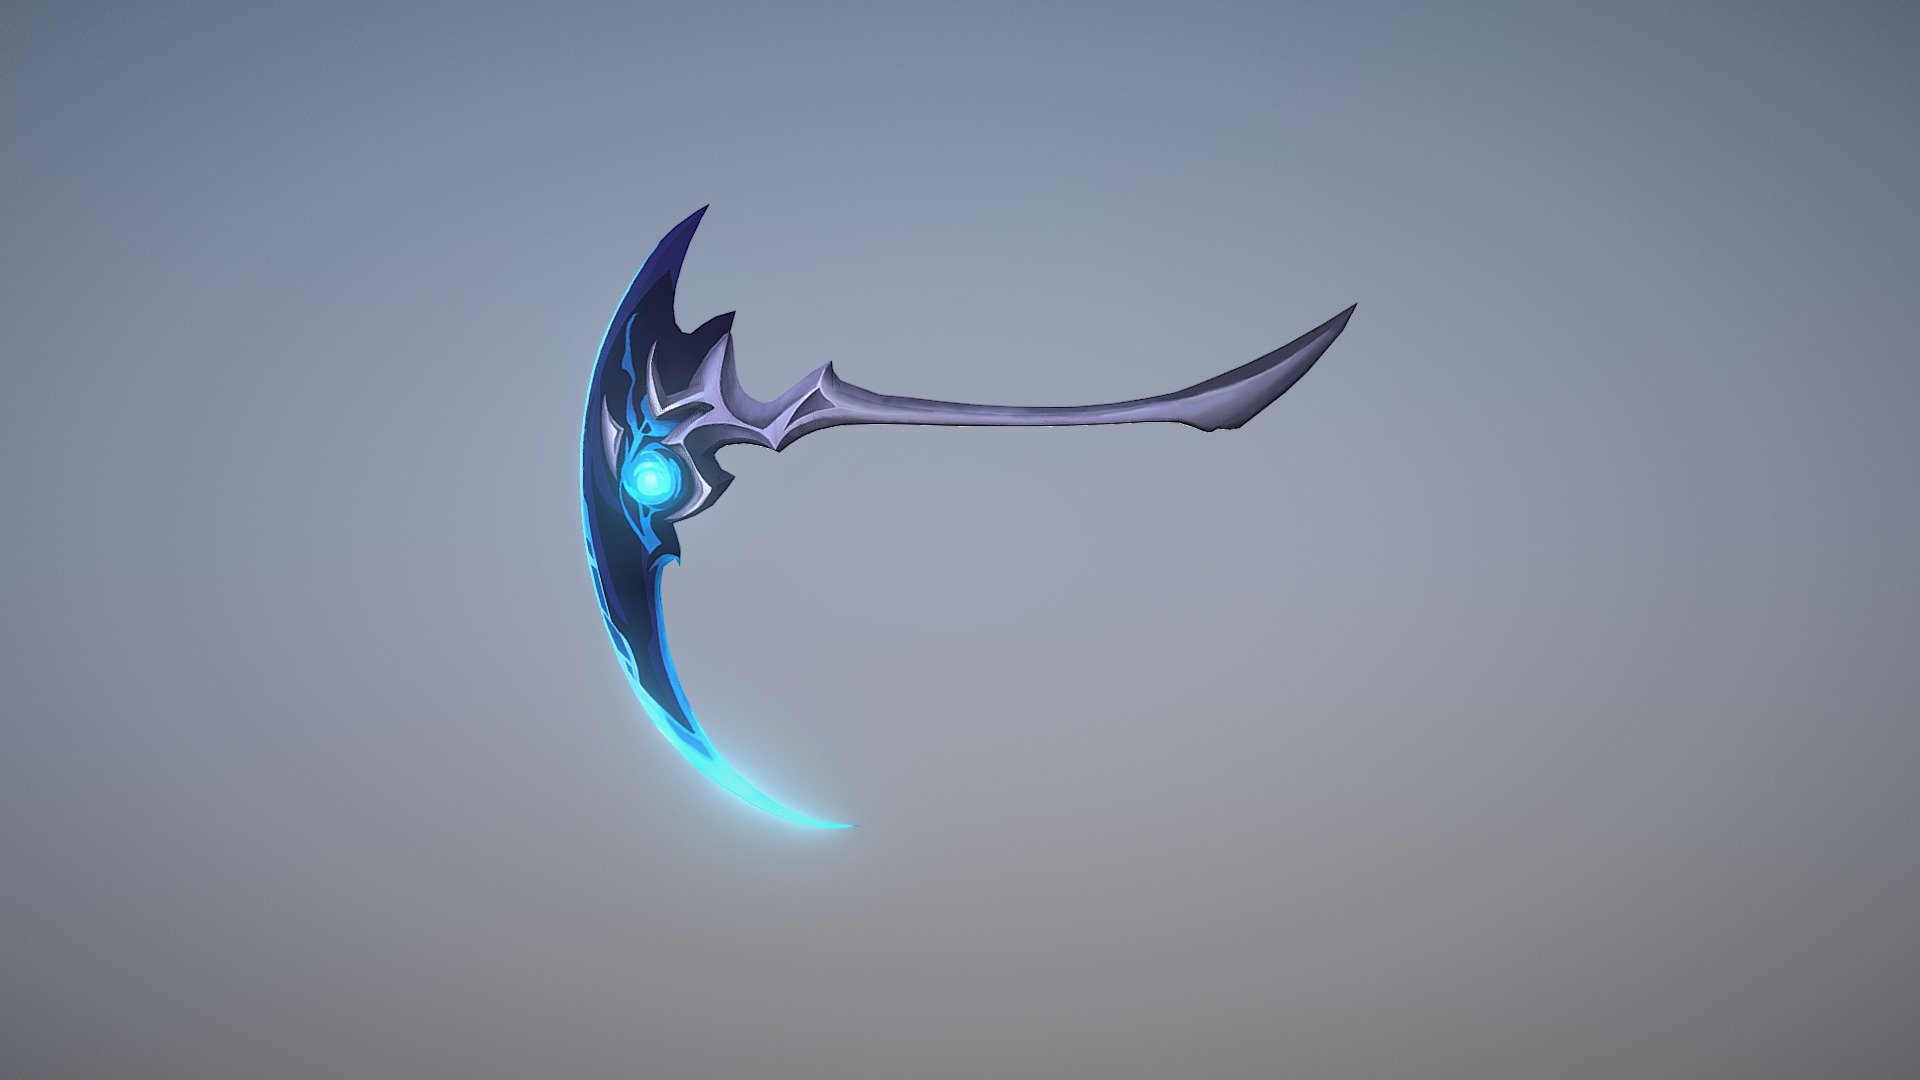 League of Legends style weapons

https://www.artstation.com/artwork/rx2EG - Kayn Weapon - 3D model by SilverYuan 3d model